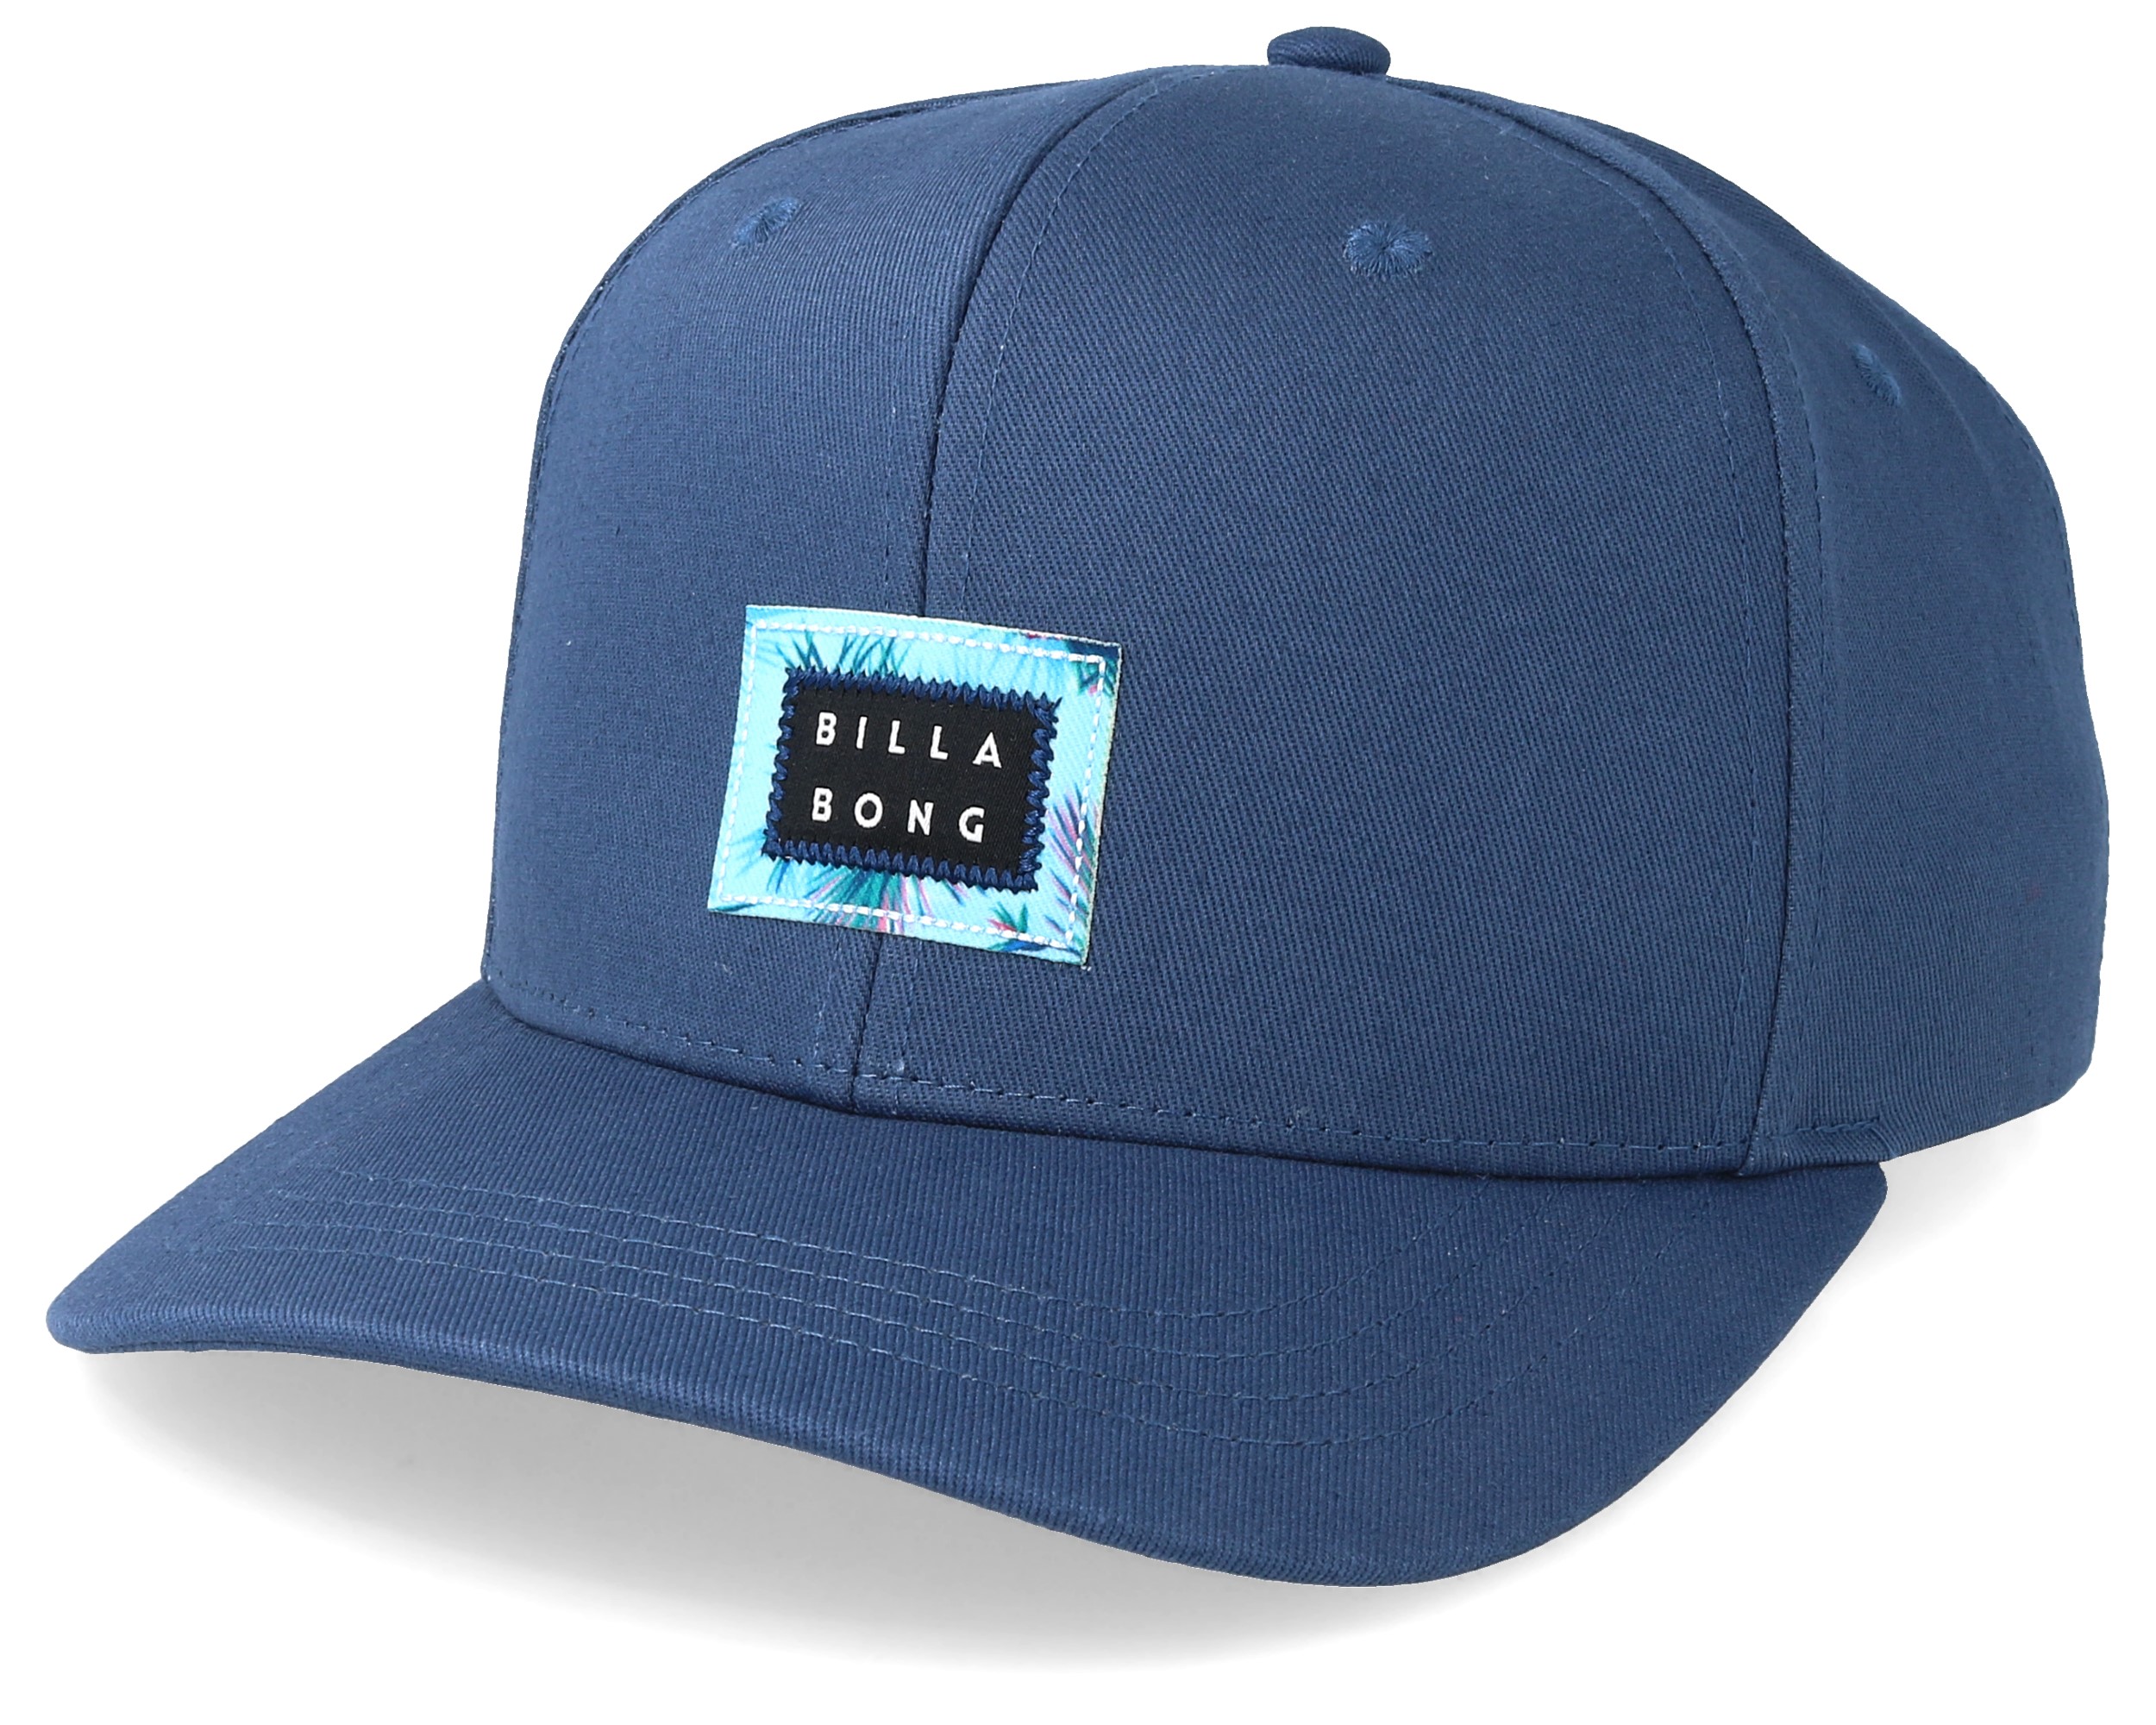 Plateau Blue Adjustable - Billabong cap